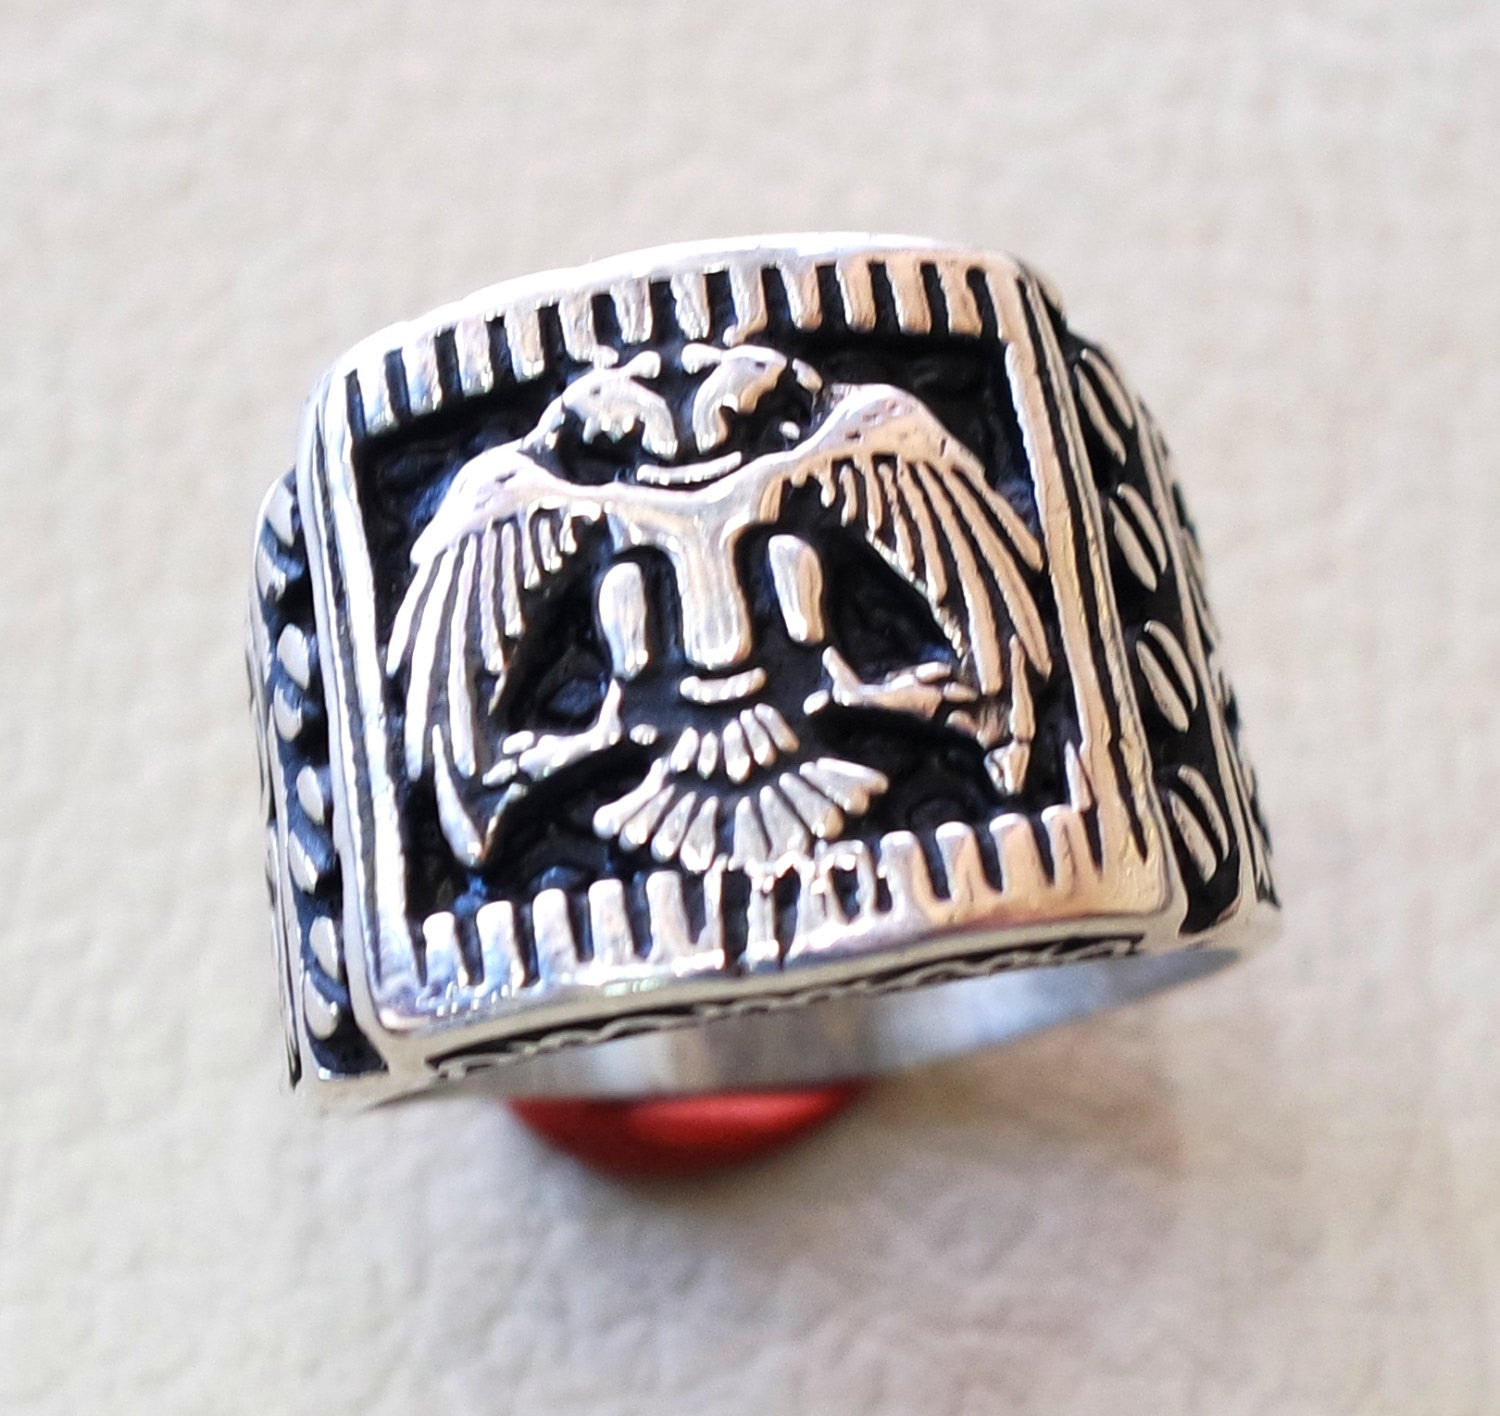 Deux têtes aigle lourd hommes anneau byzantin Romain historique et moderne symbole toutes les tailles sterling silver 925 Express bijoux d'expédition